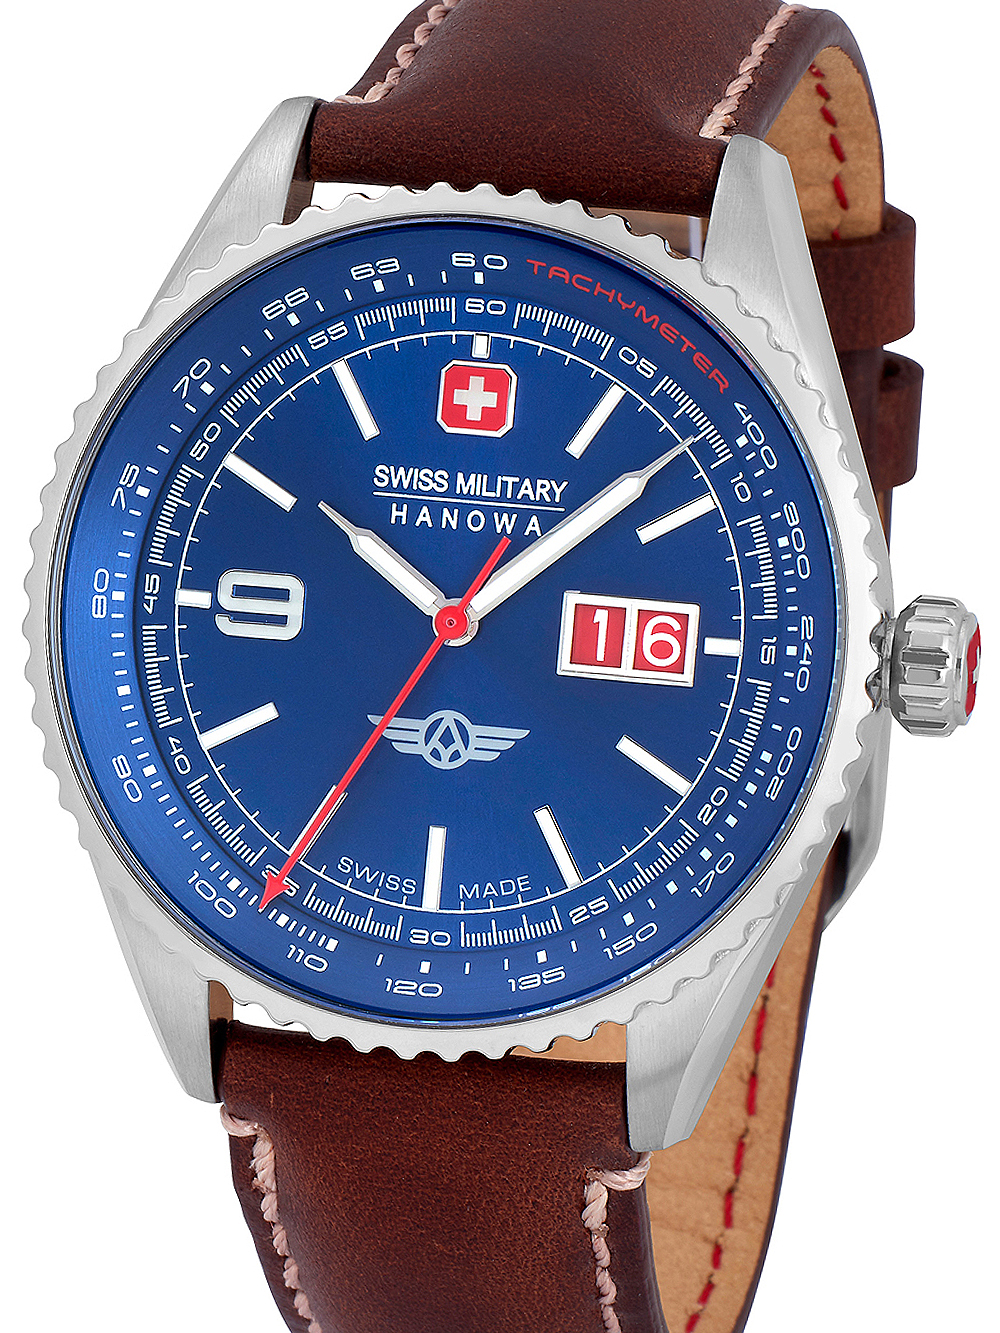 SWISS MILITARY HANOWA Uhren: günstig, portofrei & sicher kaufen!